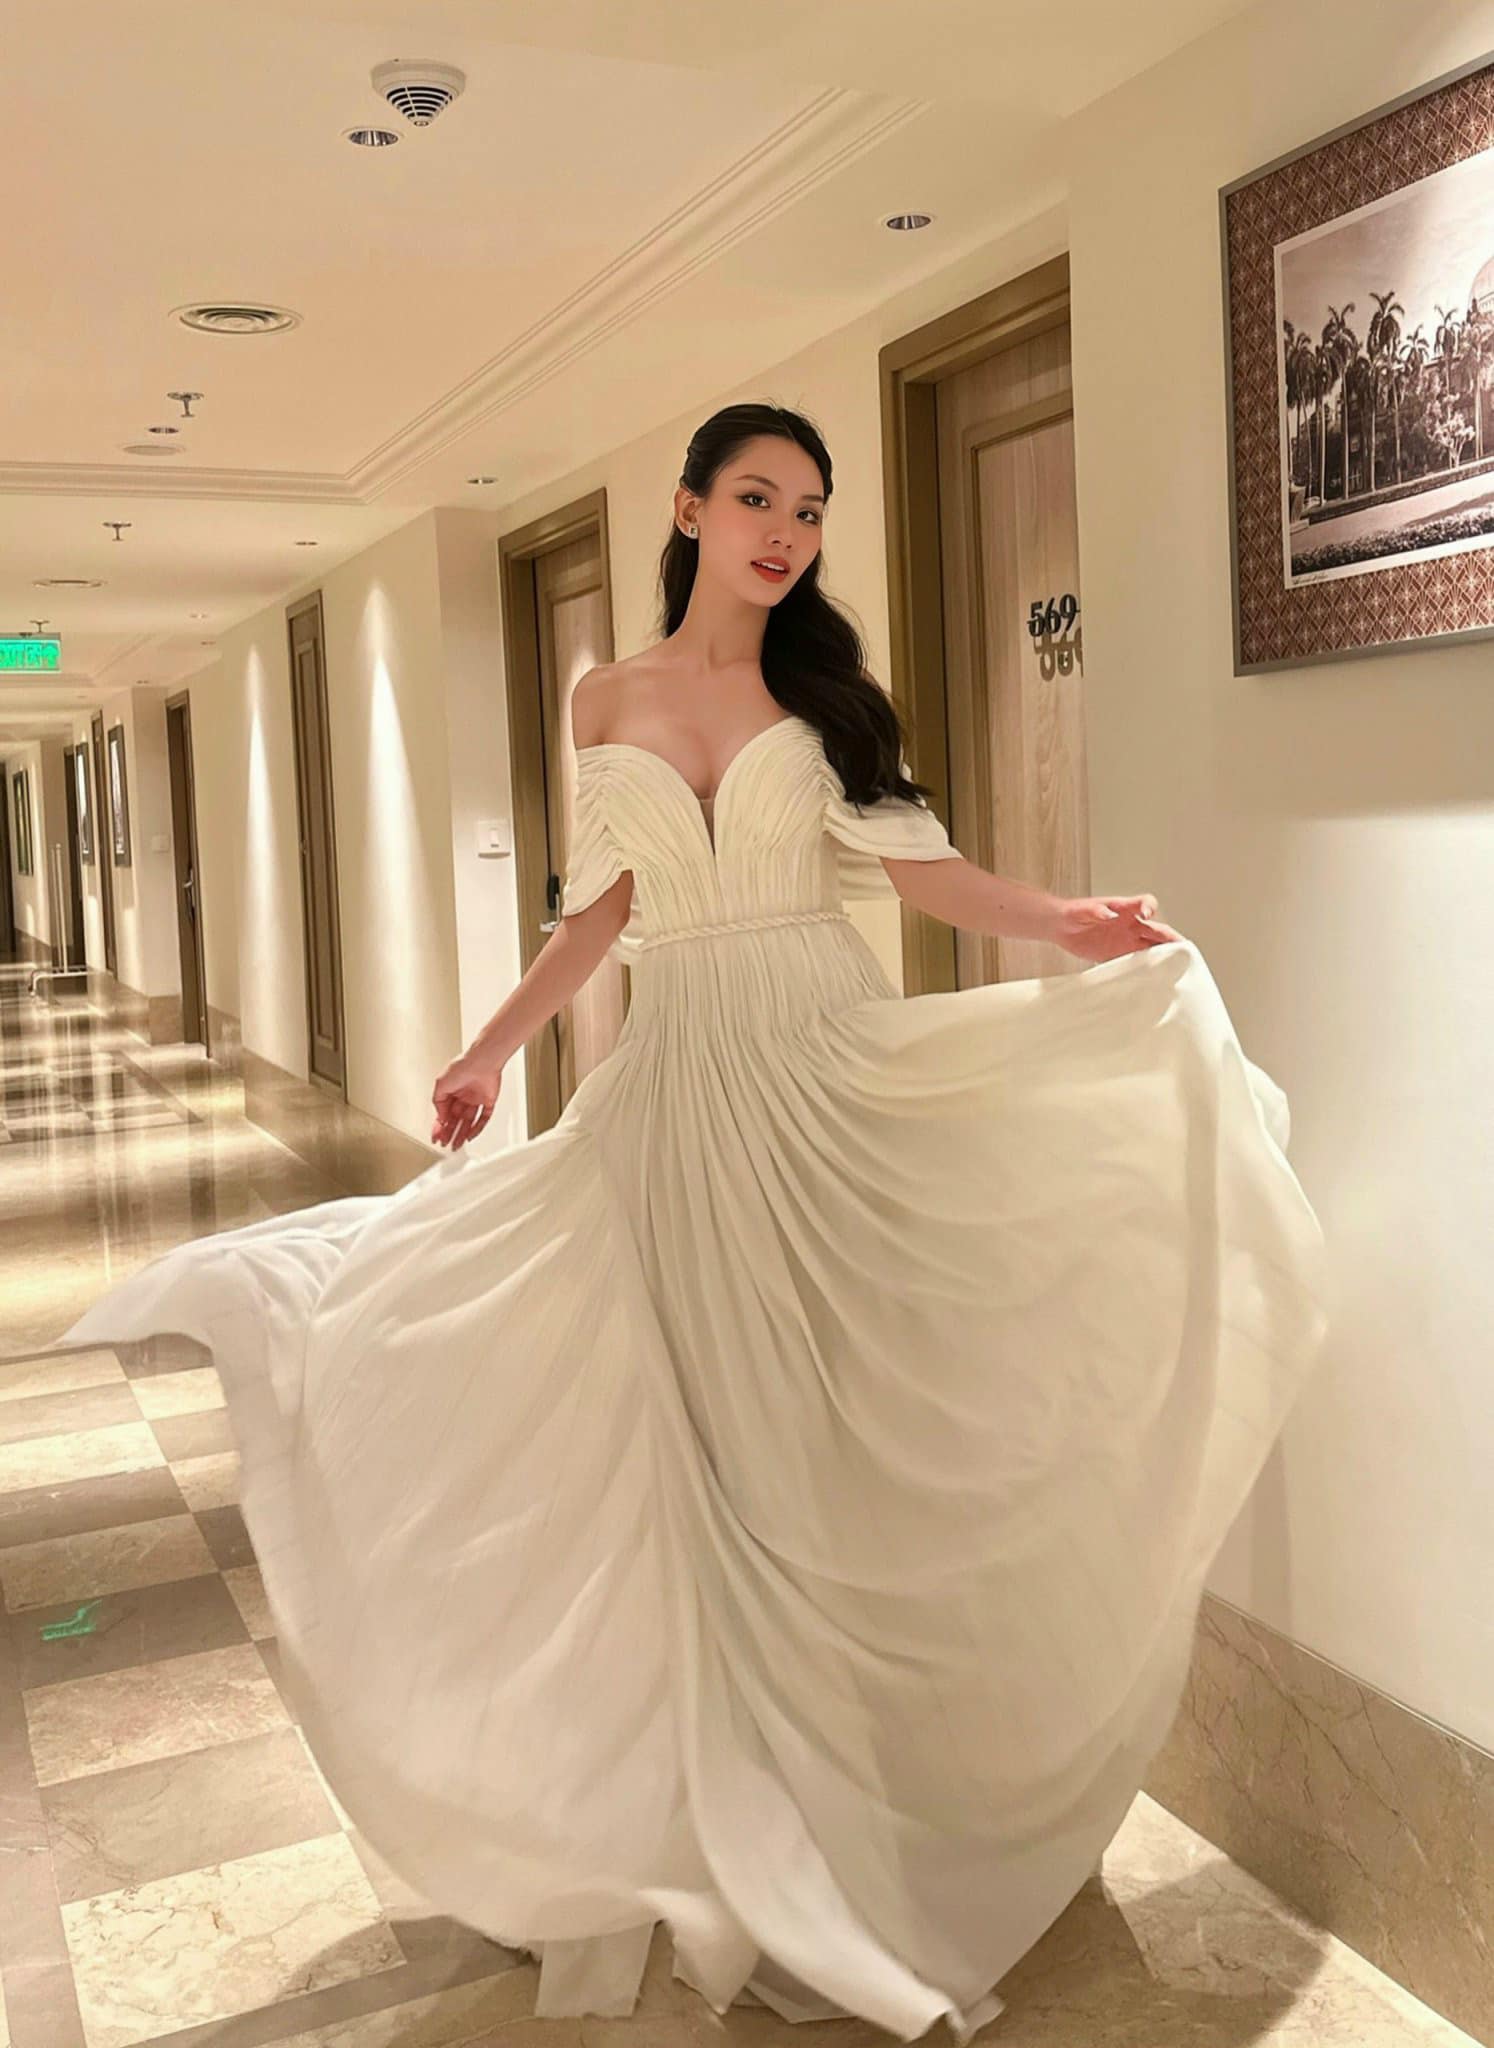 Hoa hậu Mai Phương thua giải thưởng phụ, khả năng lập nên kỳ tích rất khó tại Miss World 2023 - ảnh 2